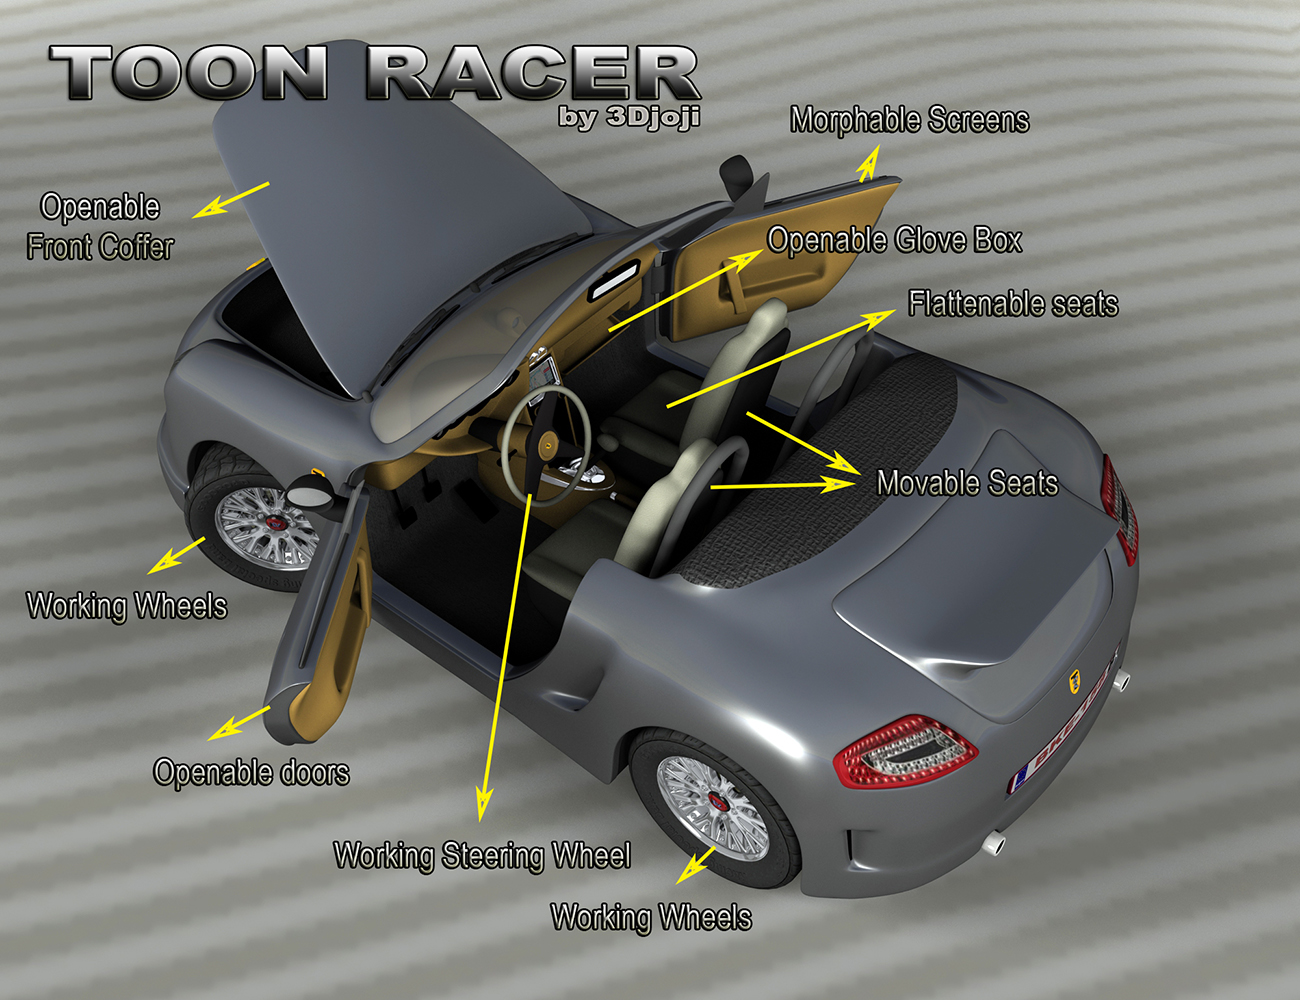 Toon Racer by: 3djoji, 3D Models by Daz 3D